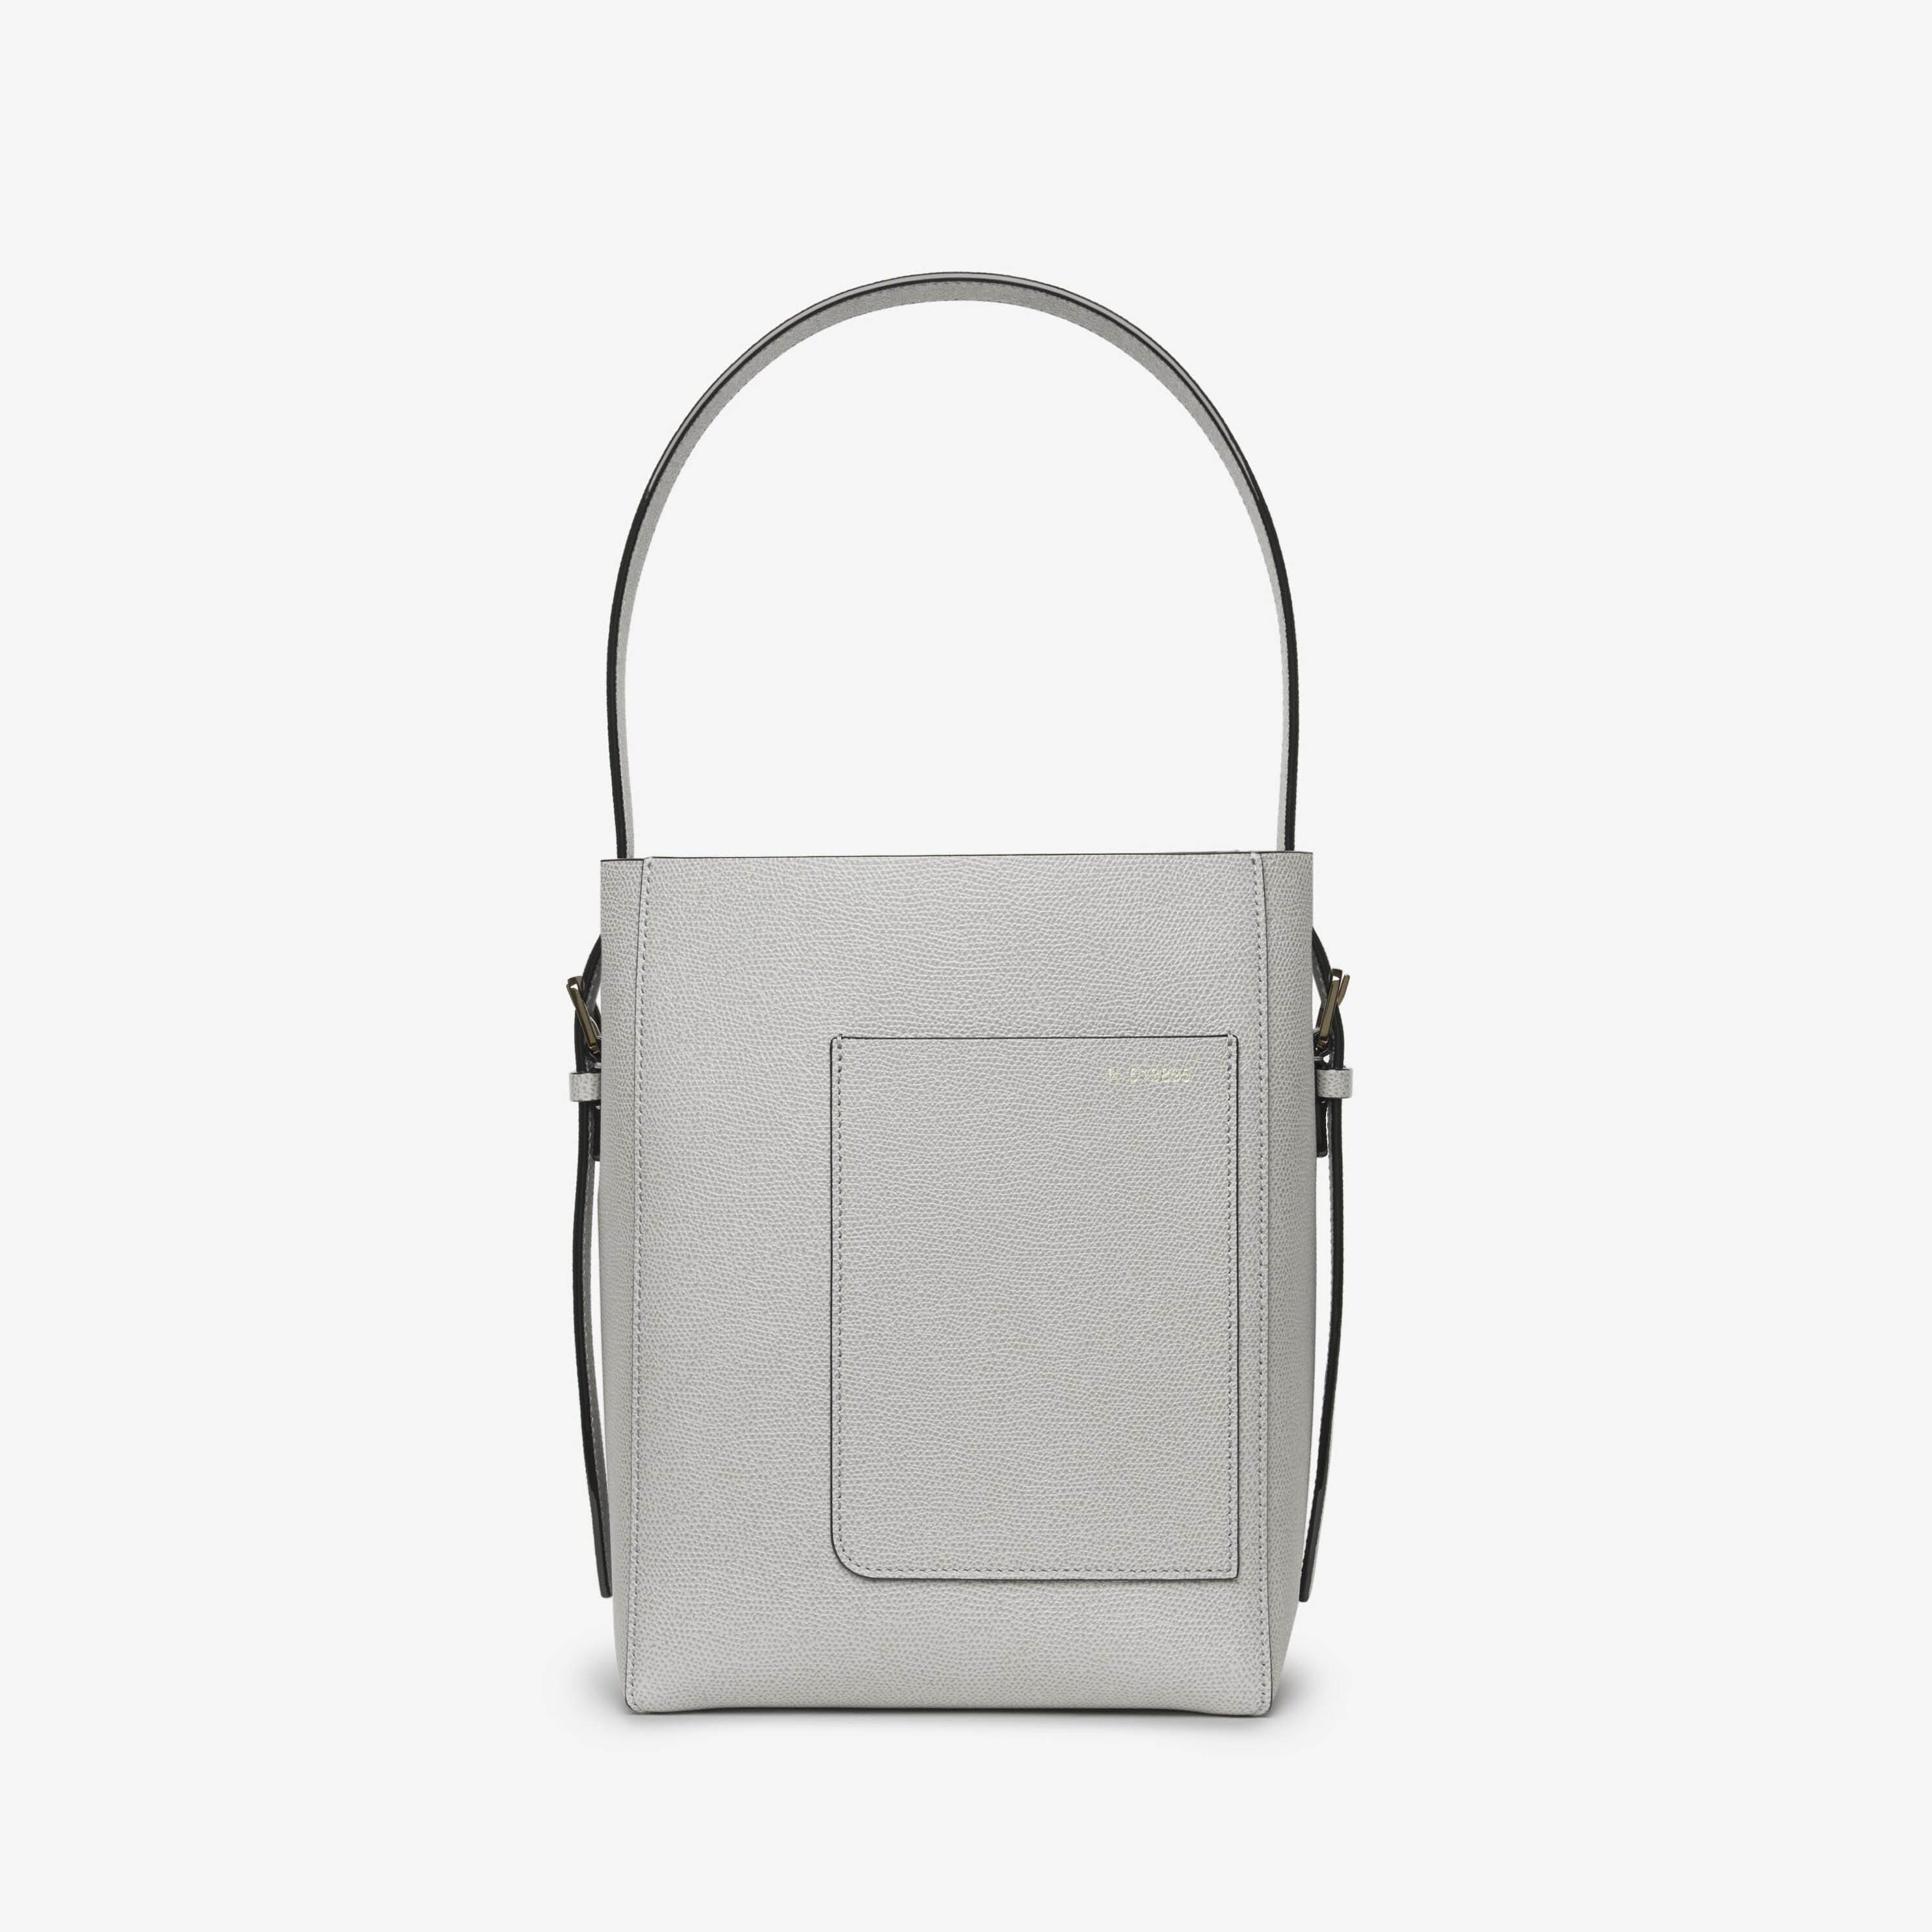 Women's designer shoulder bags: Hobo, bucket bags | Valextra